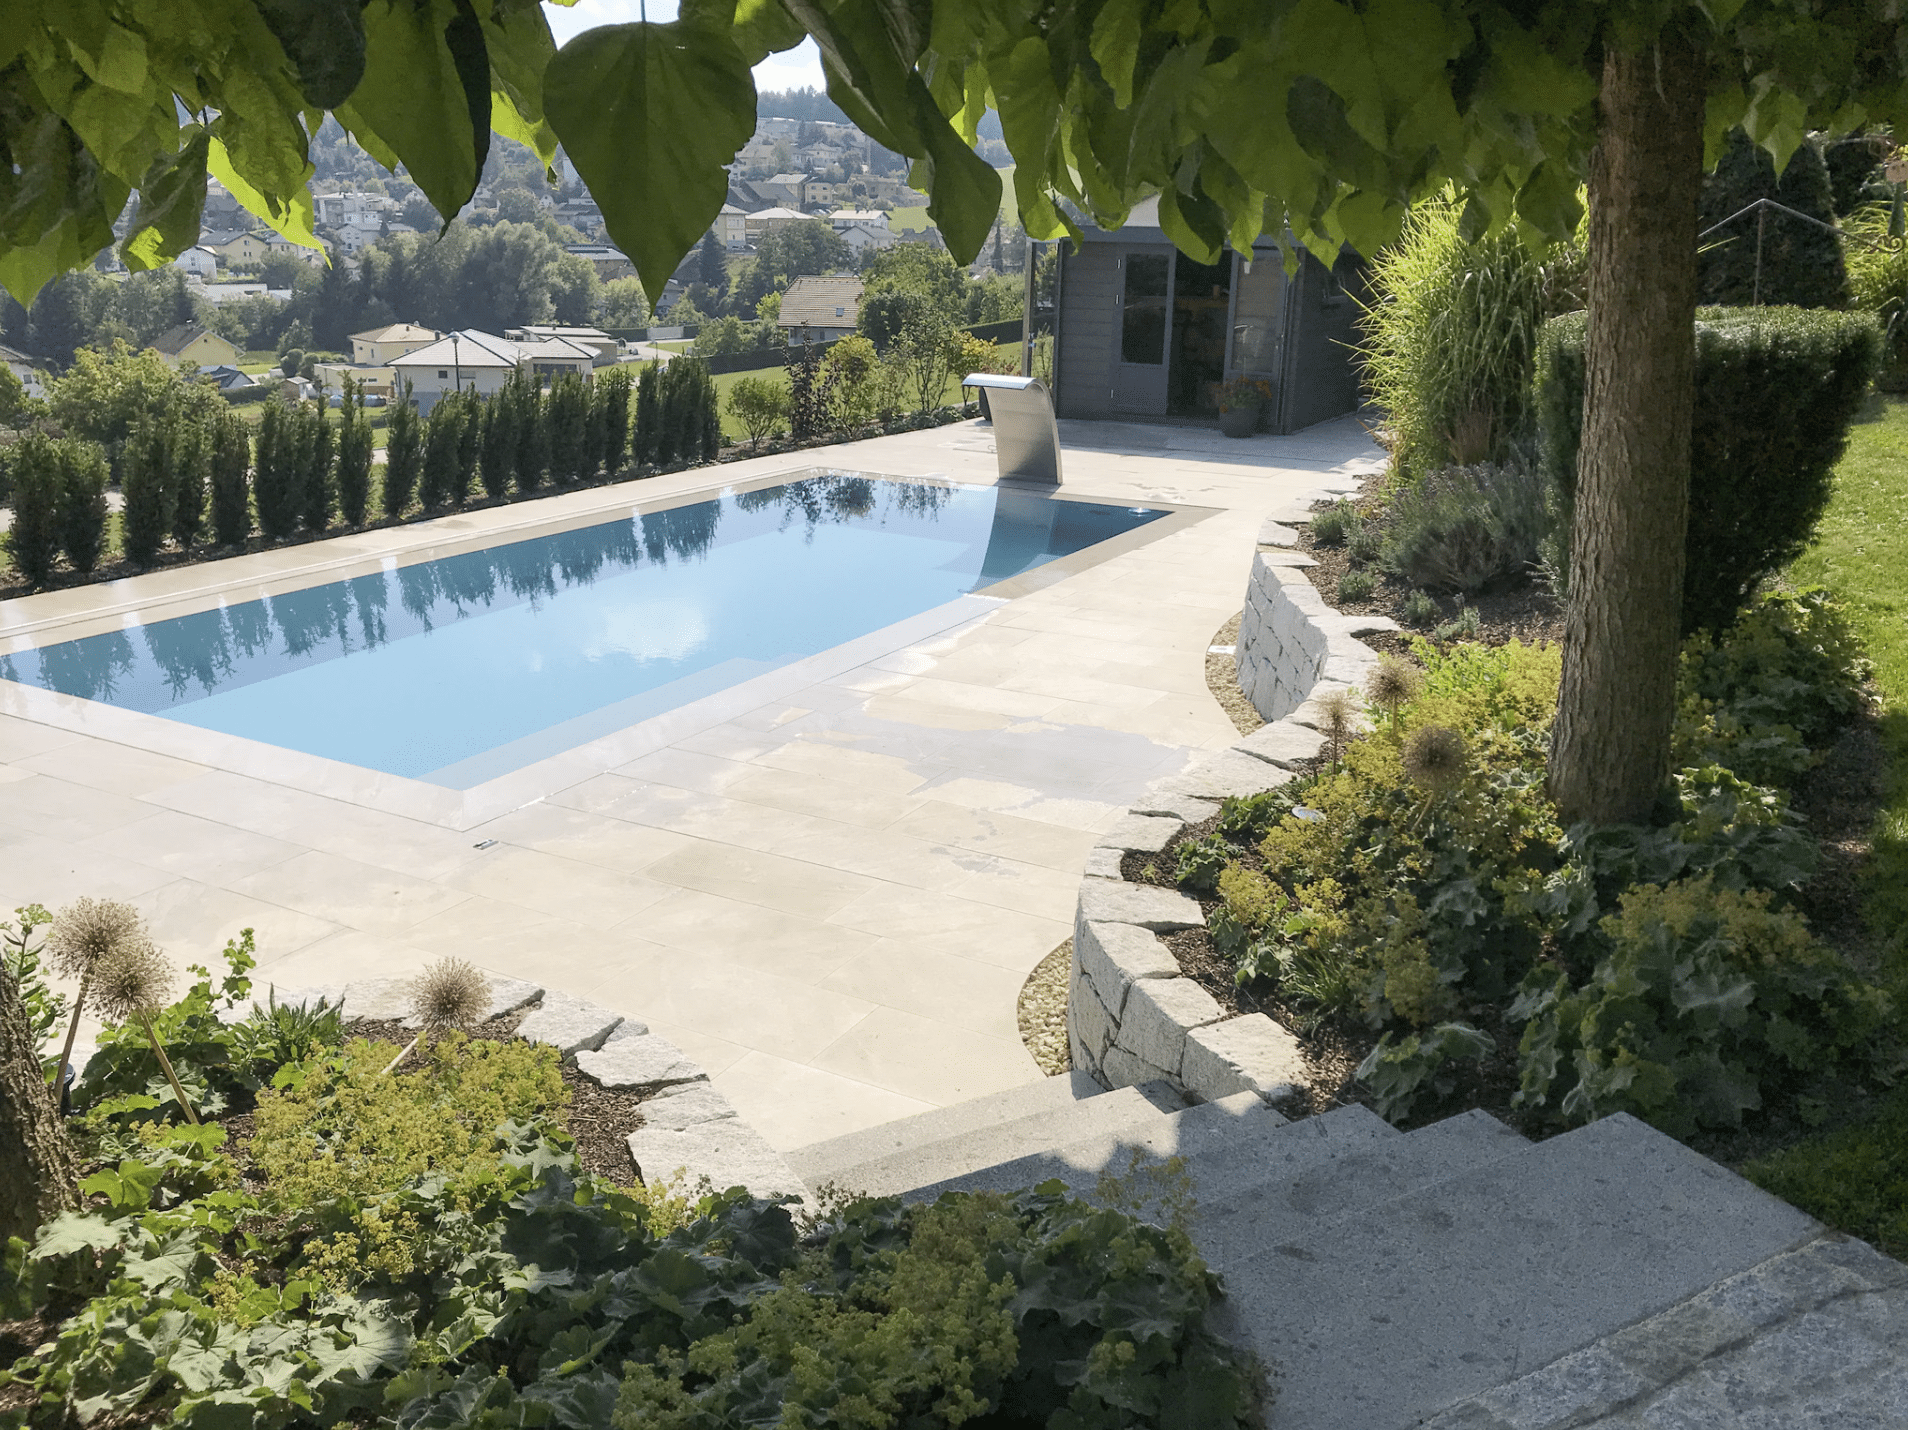 Gartenbau Schmid zeigt eine Terrasse mit Steinfliesen, Pool und einer Treppe in den Garten mit verschiedenster Pflanzen.